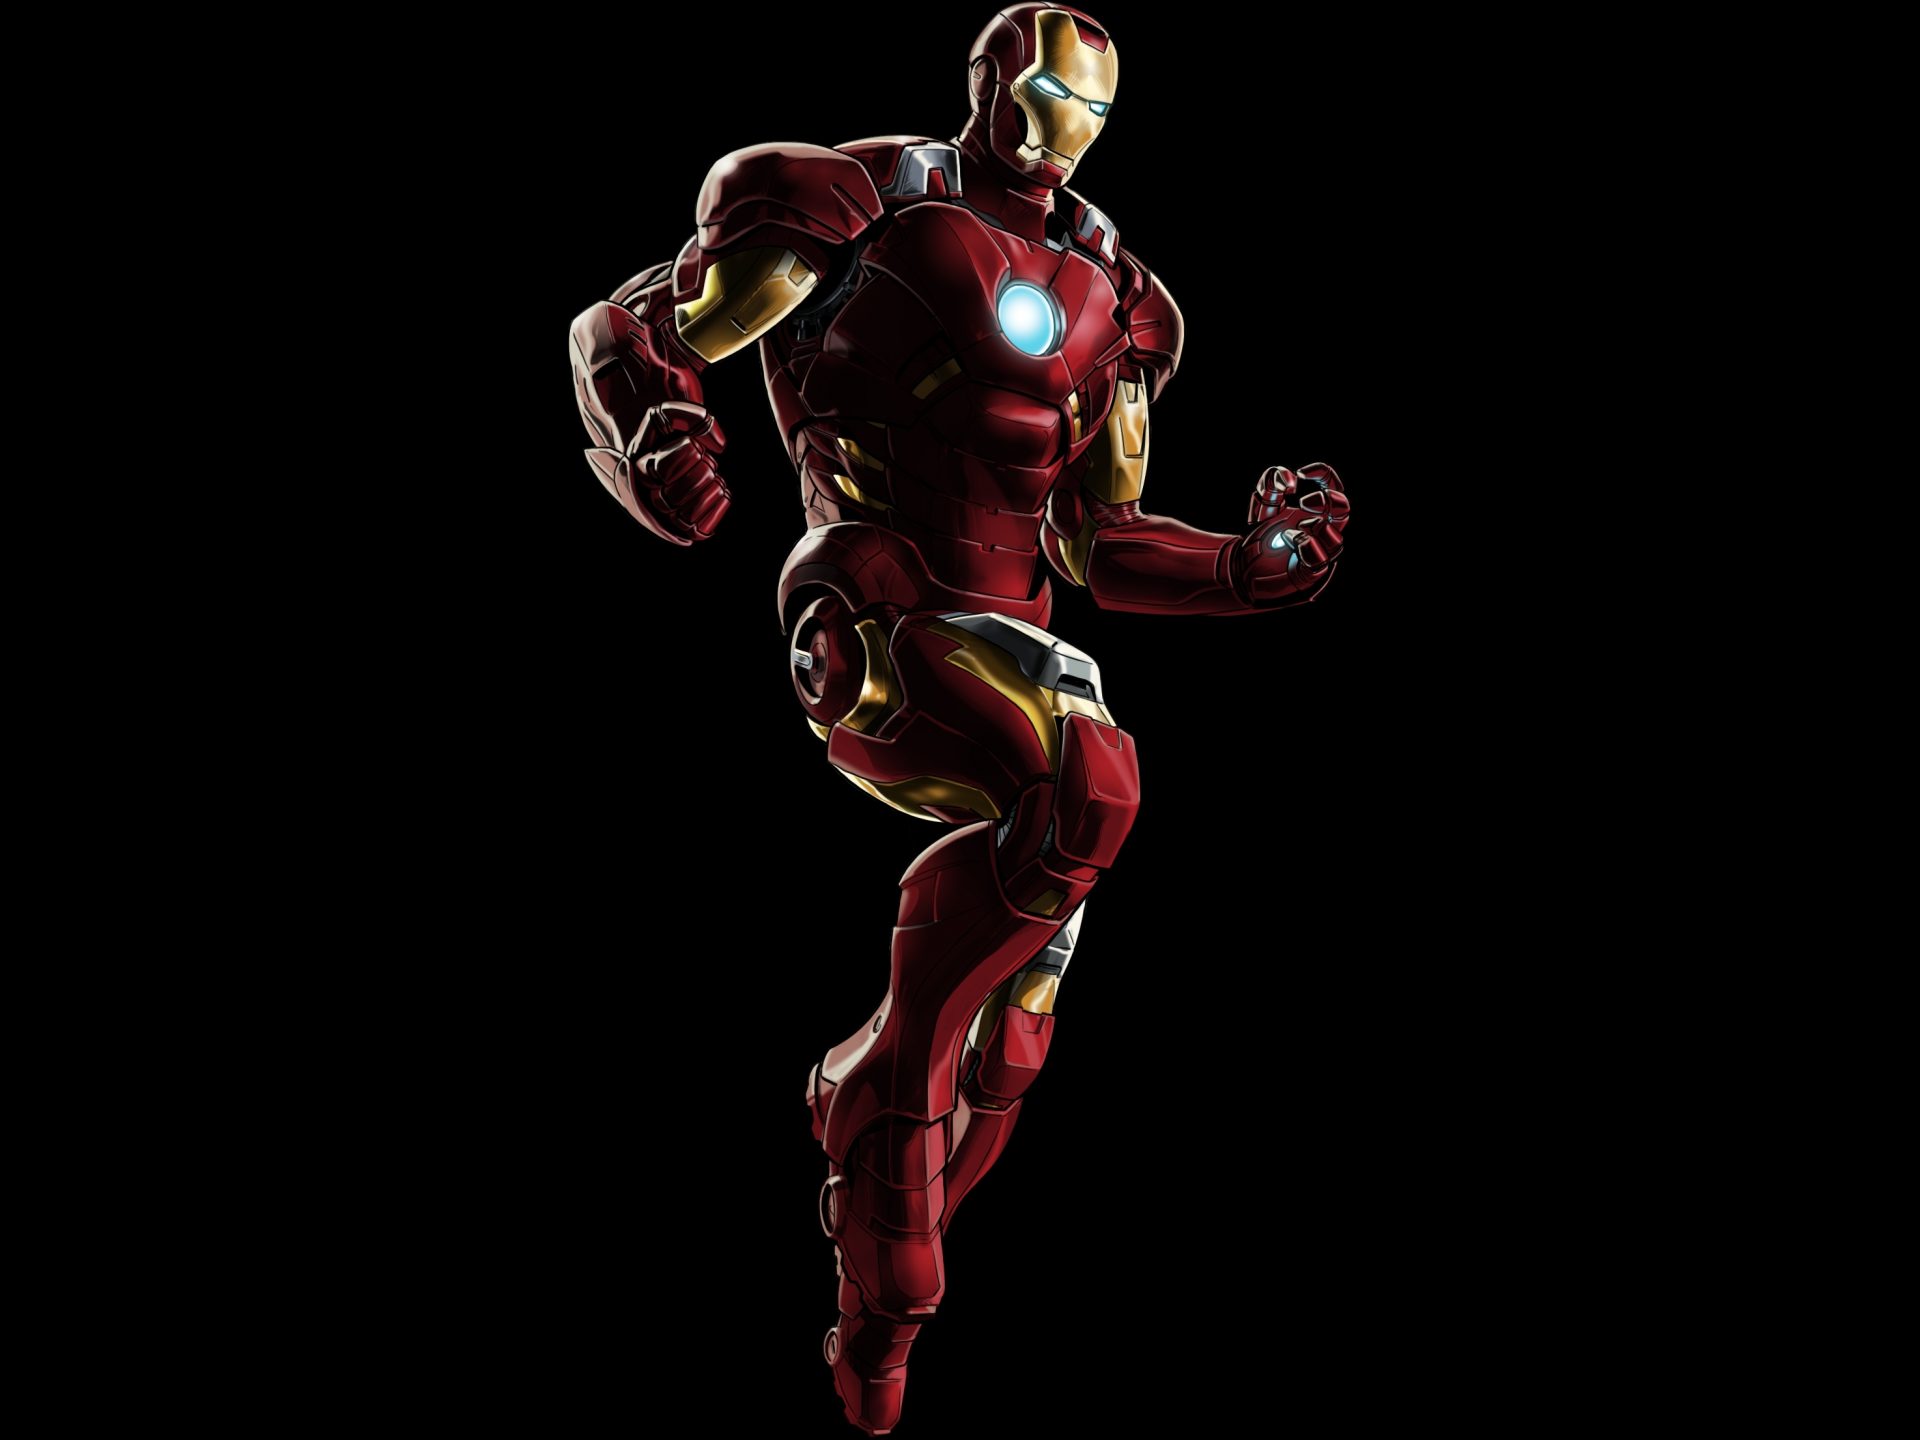 Iron Man Mark VII (Marvel) 4K UHD Wallpaper